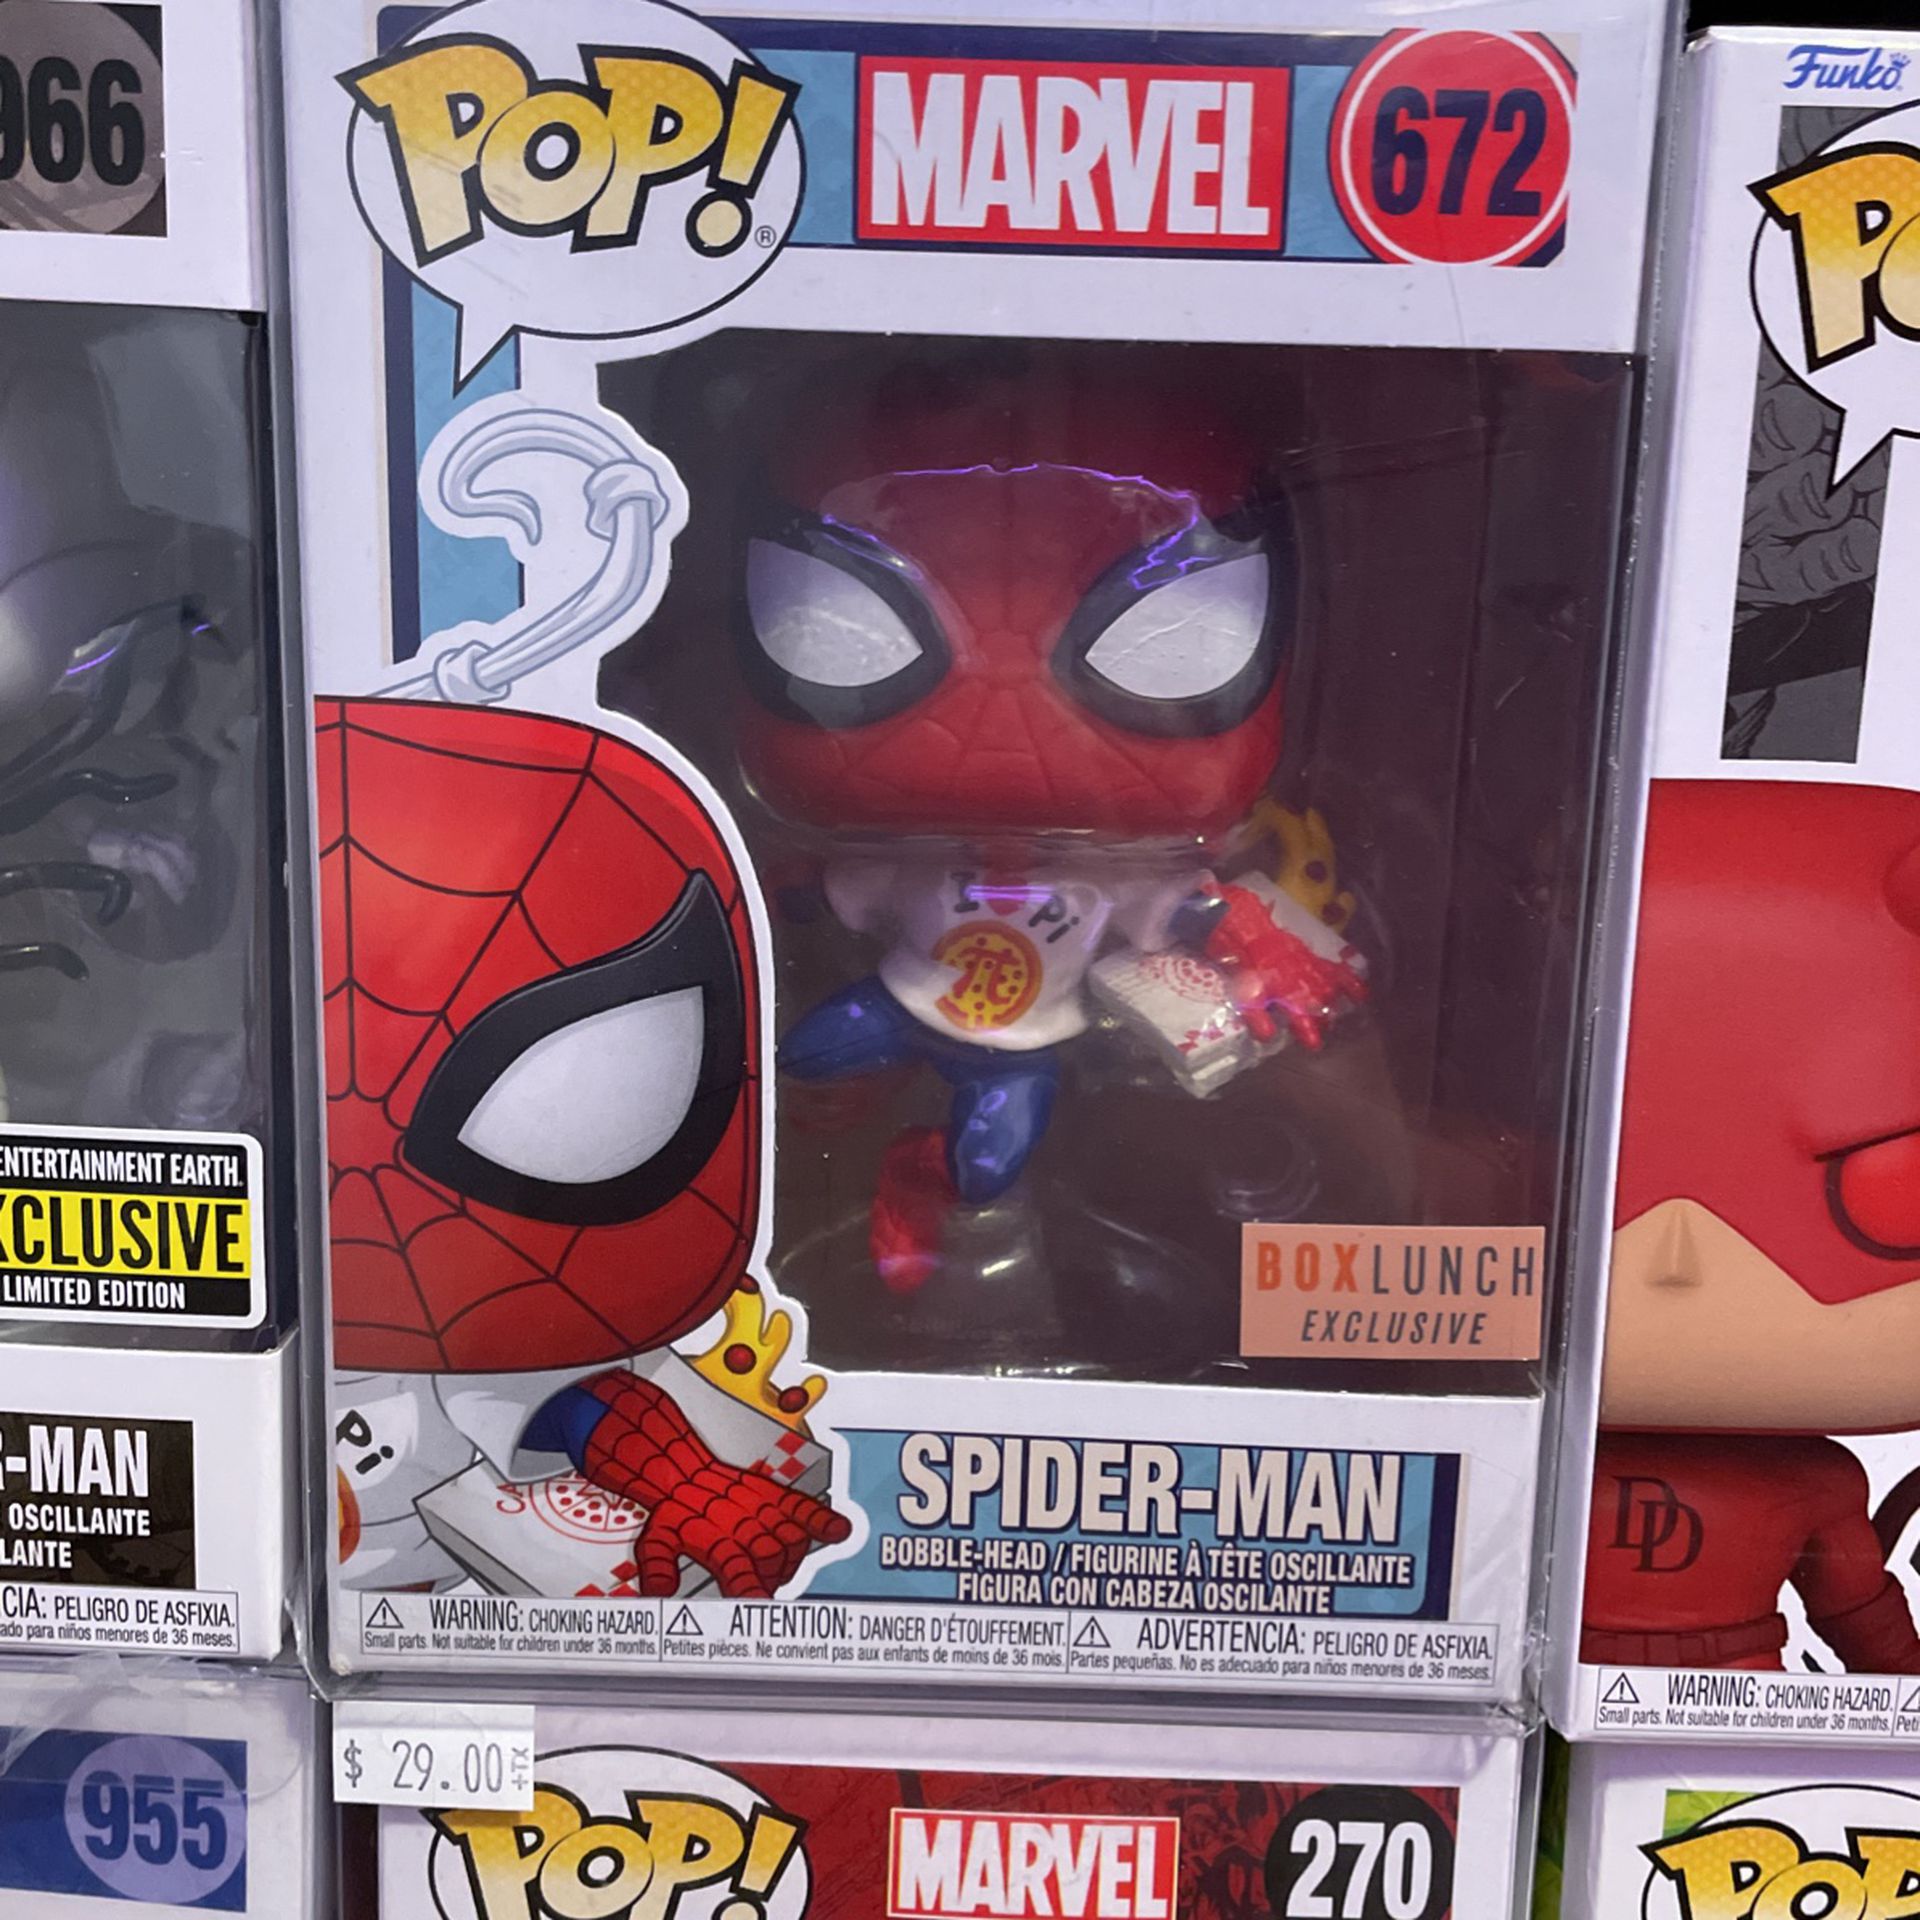 Spider man Box lunch exclusive funko pop 672